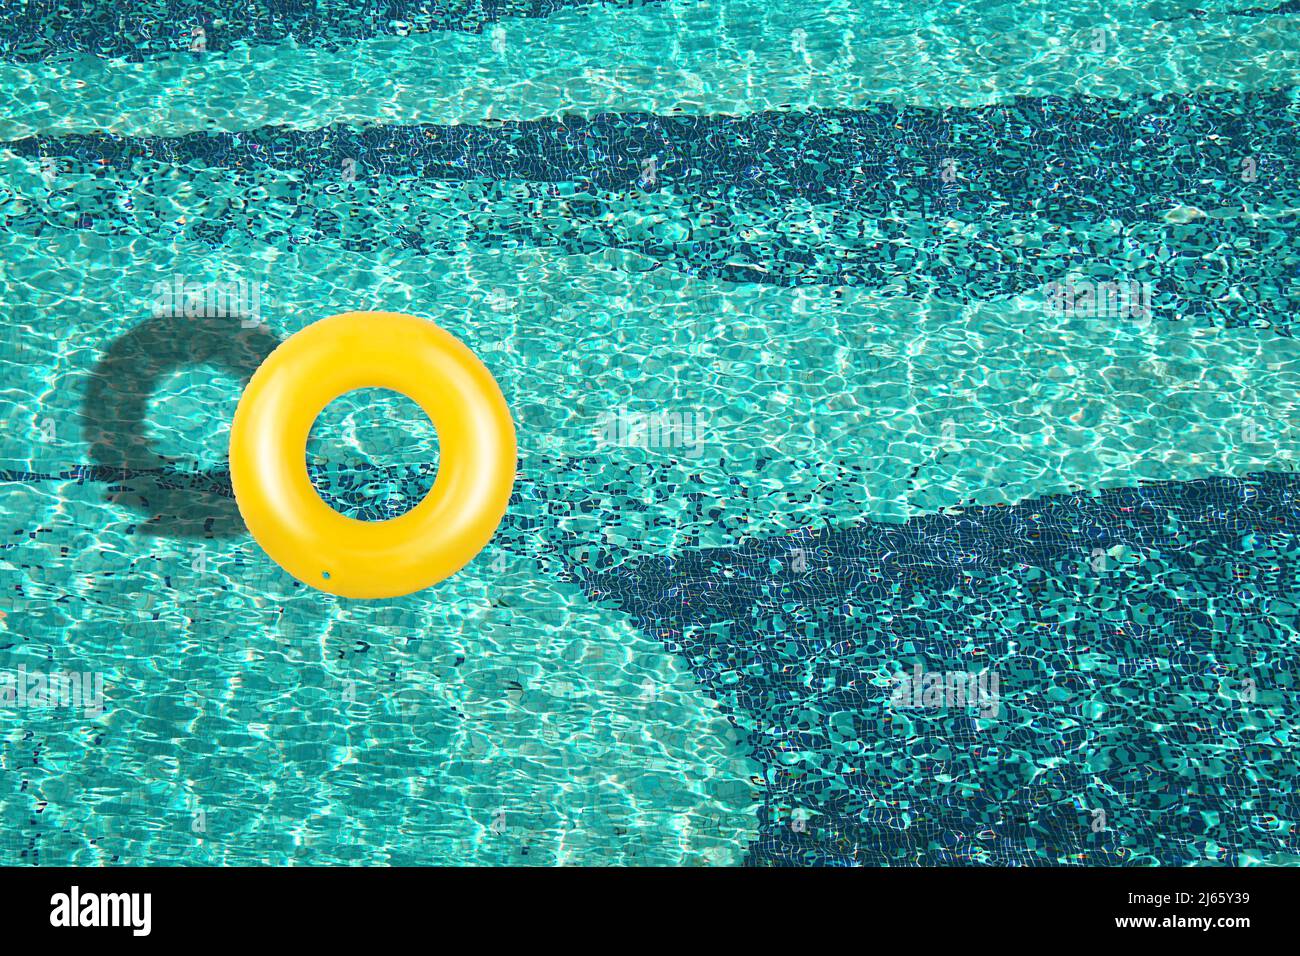 Vue aérienne de l'anneau jaune flottant dans une piscine bleue sous une journée ensoleillée Banque D'Images